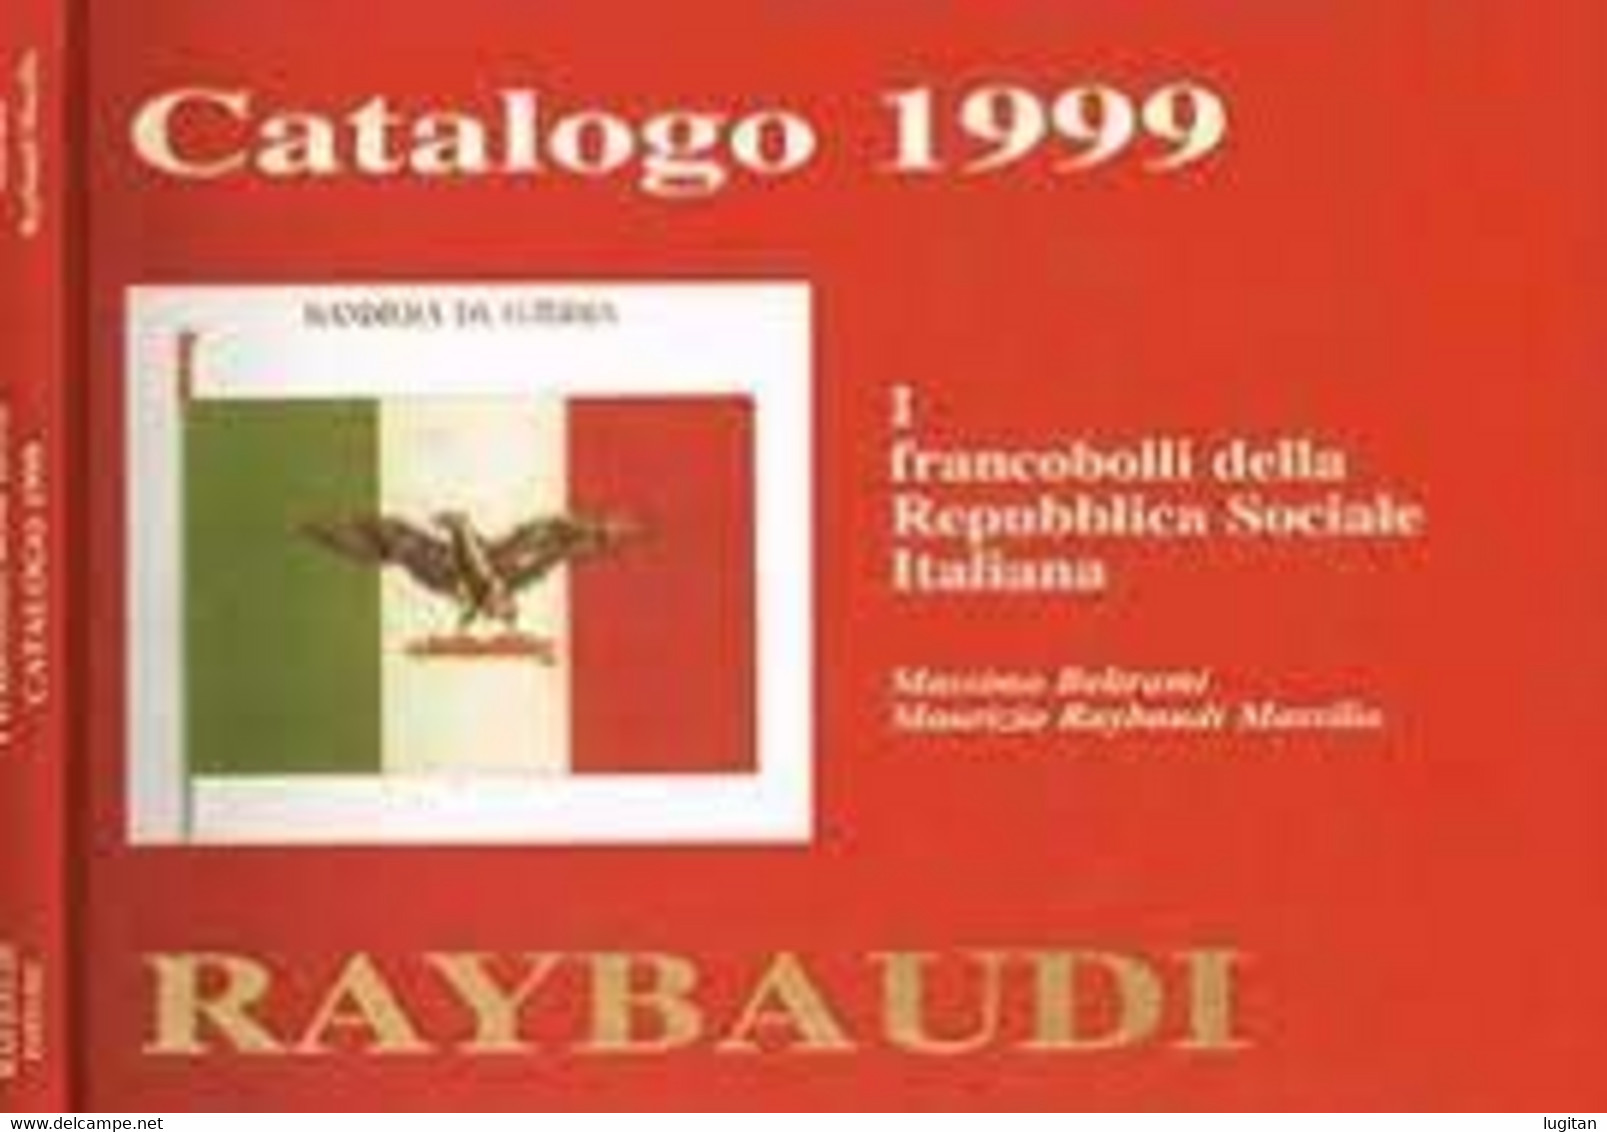 CATALOGO 1999 - I FRANCOBOLLI DELLE REPUBBLICA SOCIALE - RAYBAUDI - War 1939-45